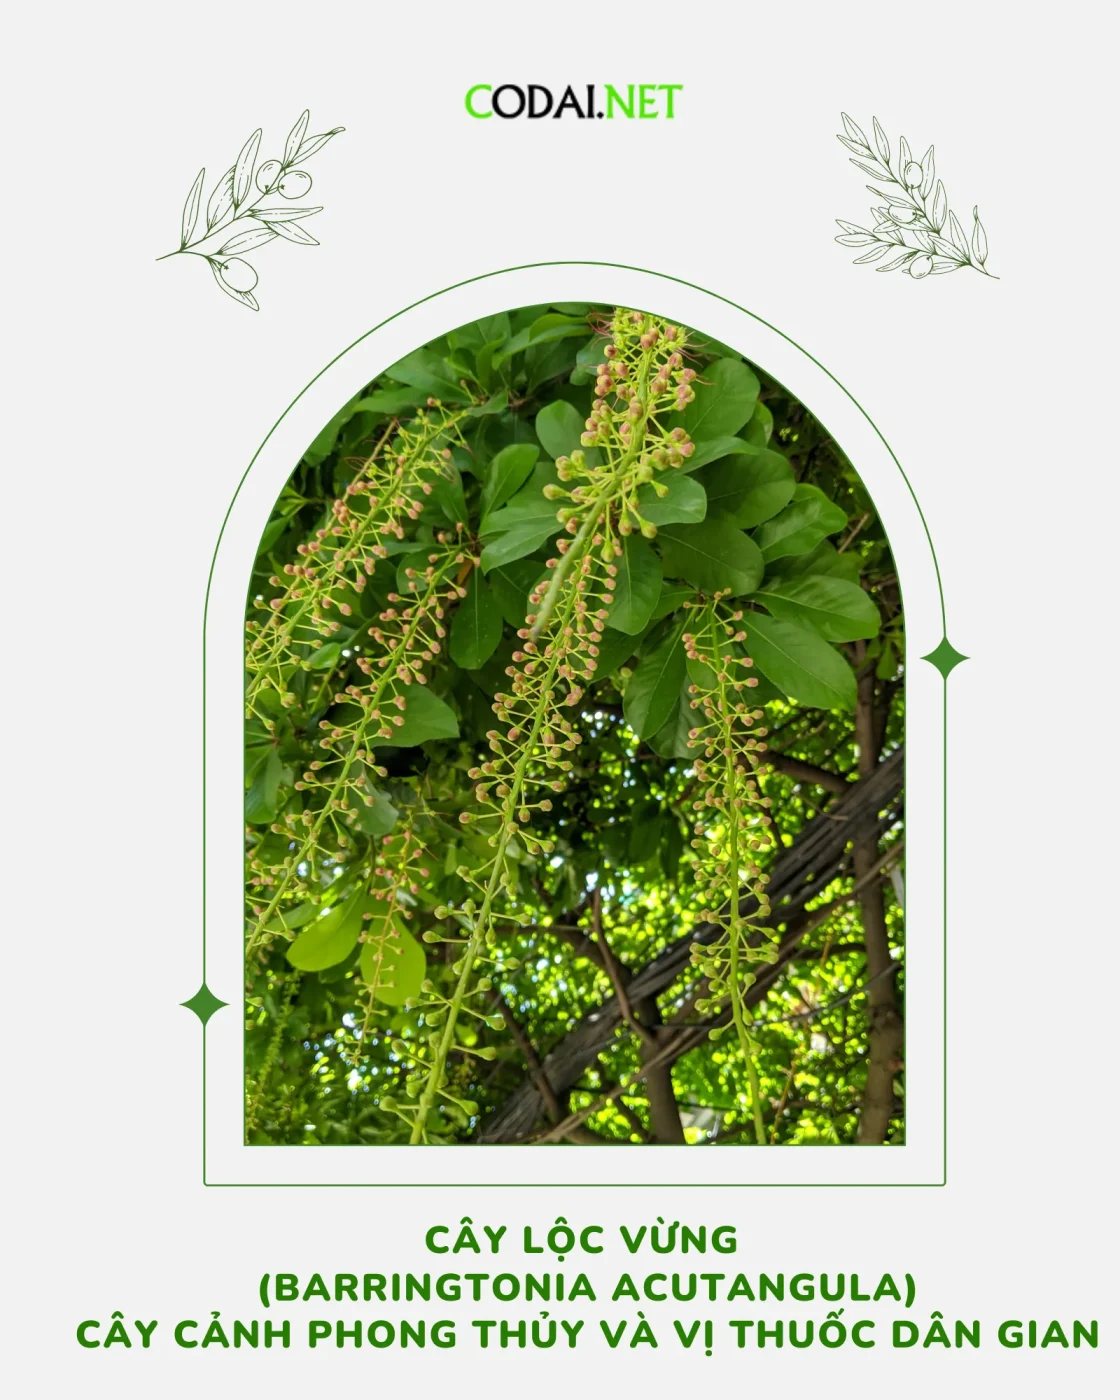 Cây Lộc Vừng (Barringtonia Acutangula) Cây cảnh phong thủy và vị thuốc dân gian